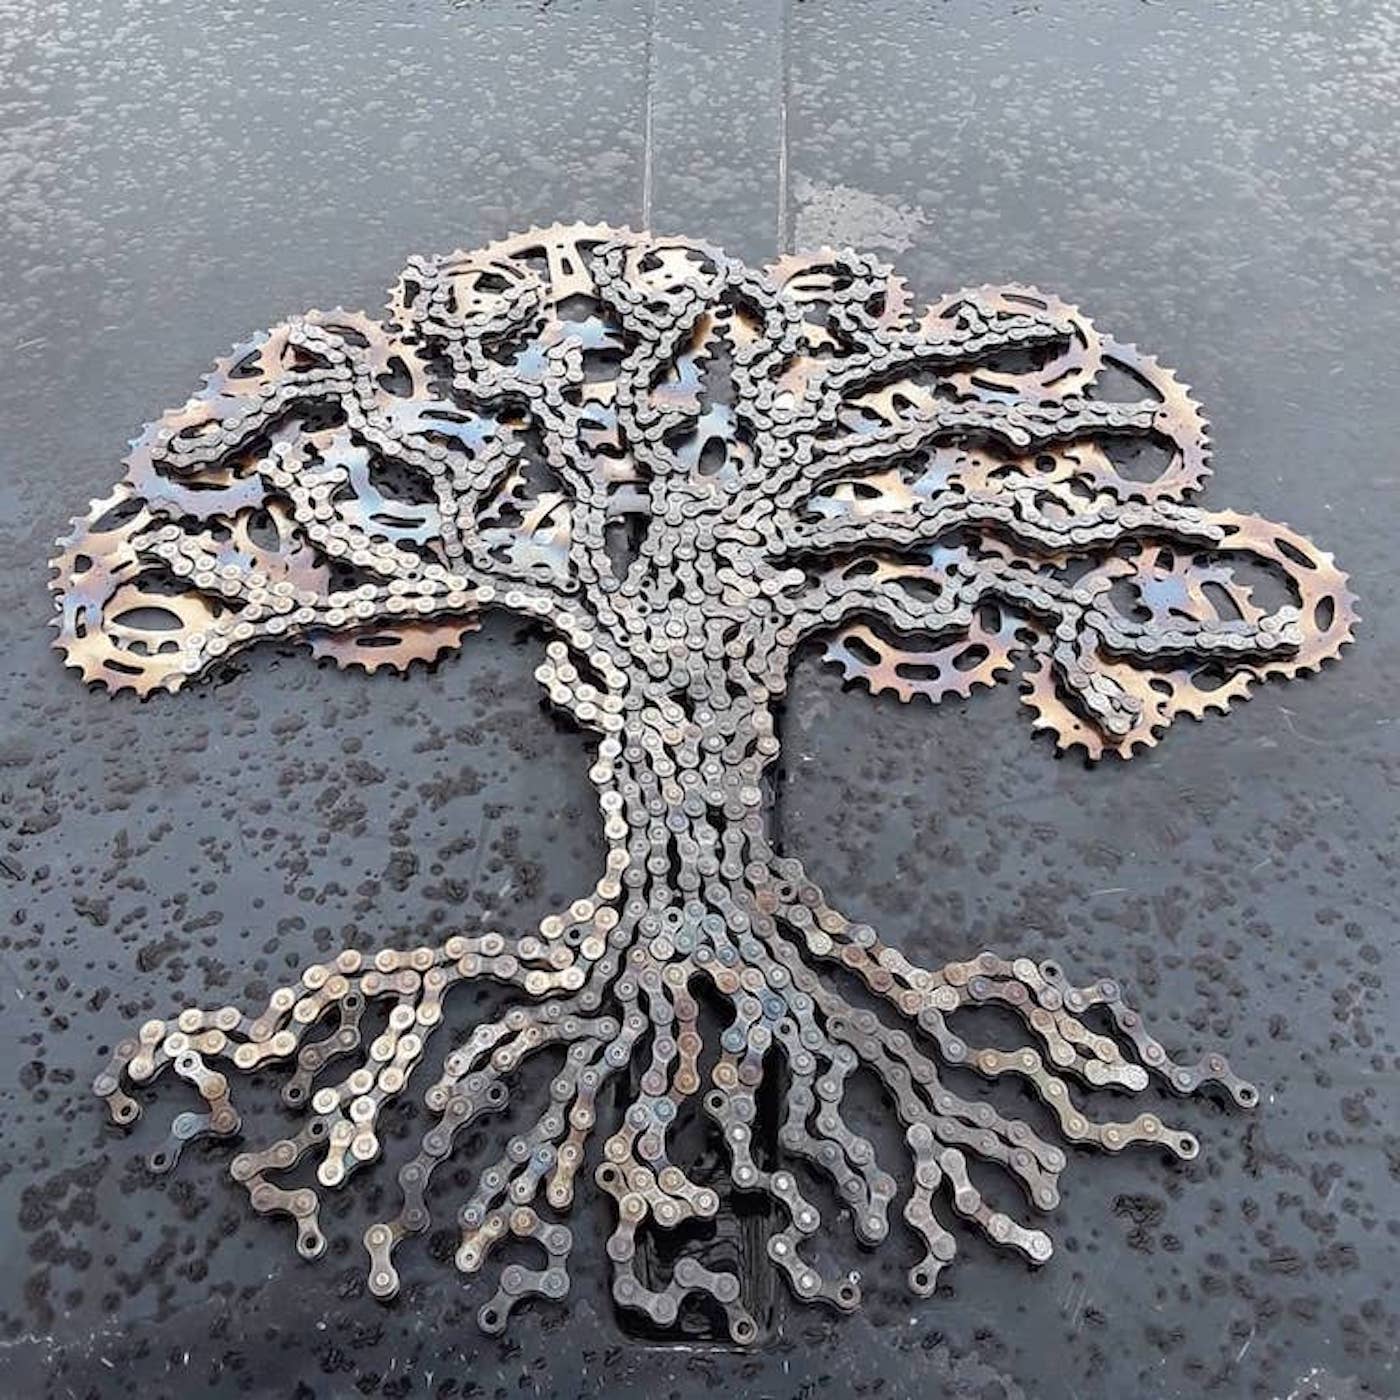 L'artiste Drew Evans recycle les chaînes de vélos en sculptures étonnantes